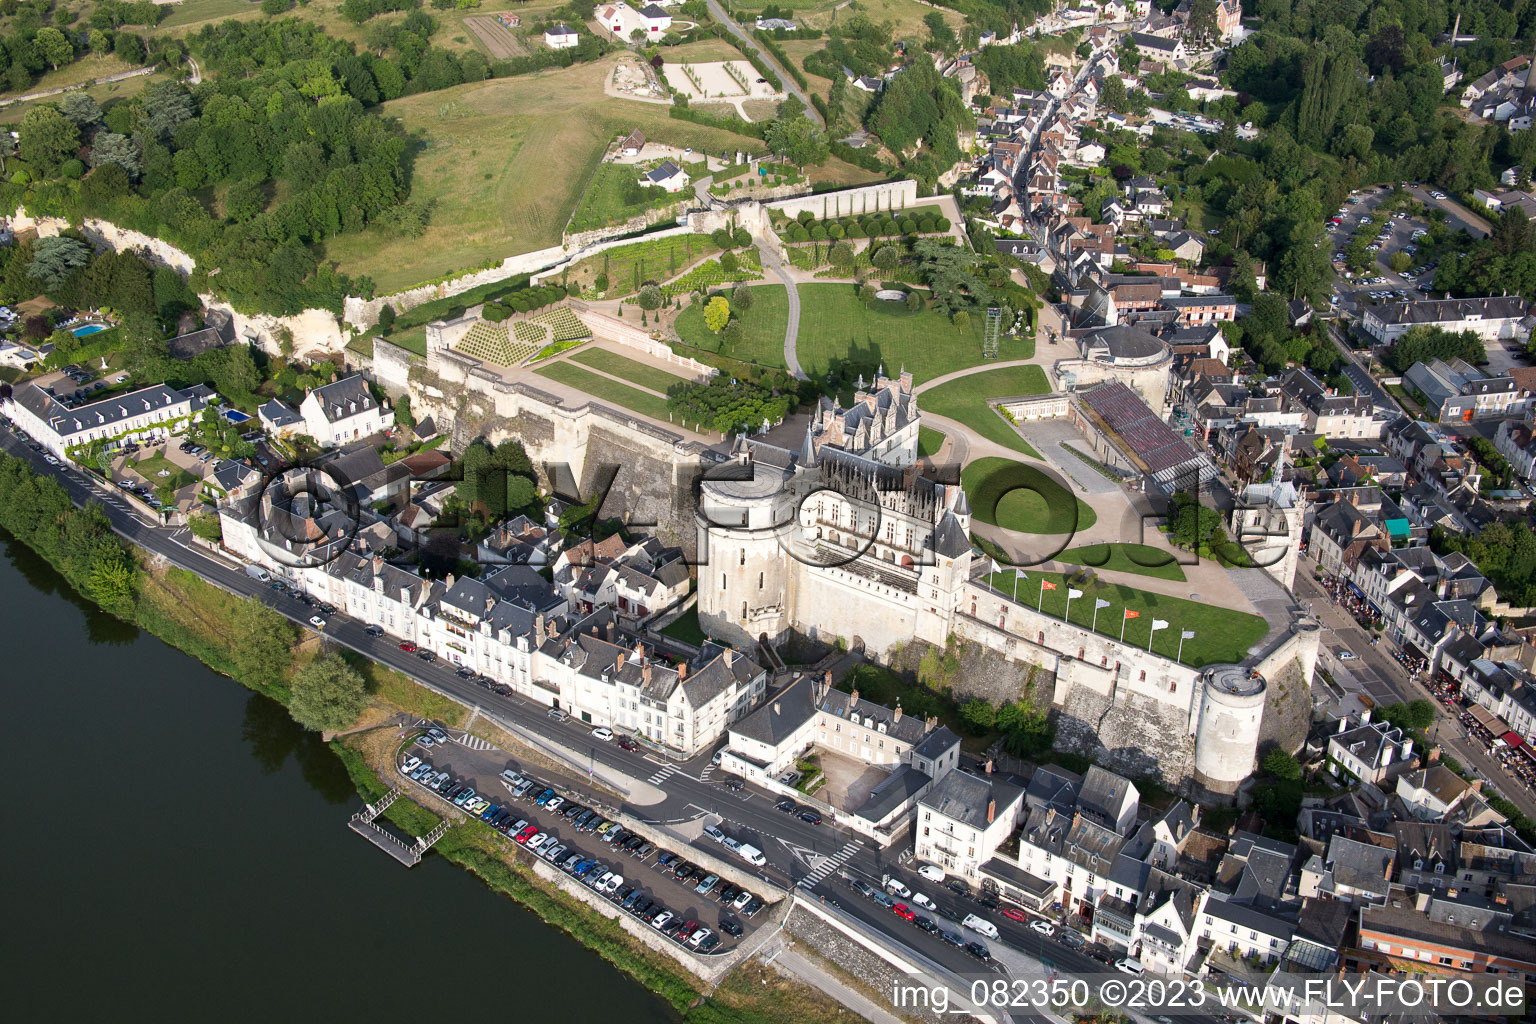 Schrägluftbild von Amboise im Bundesland Indre-et-Loire, Frankreich